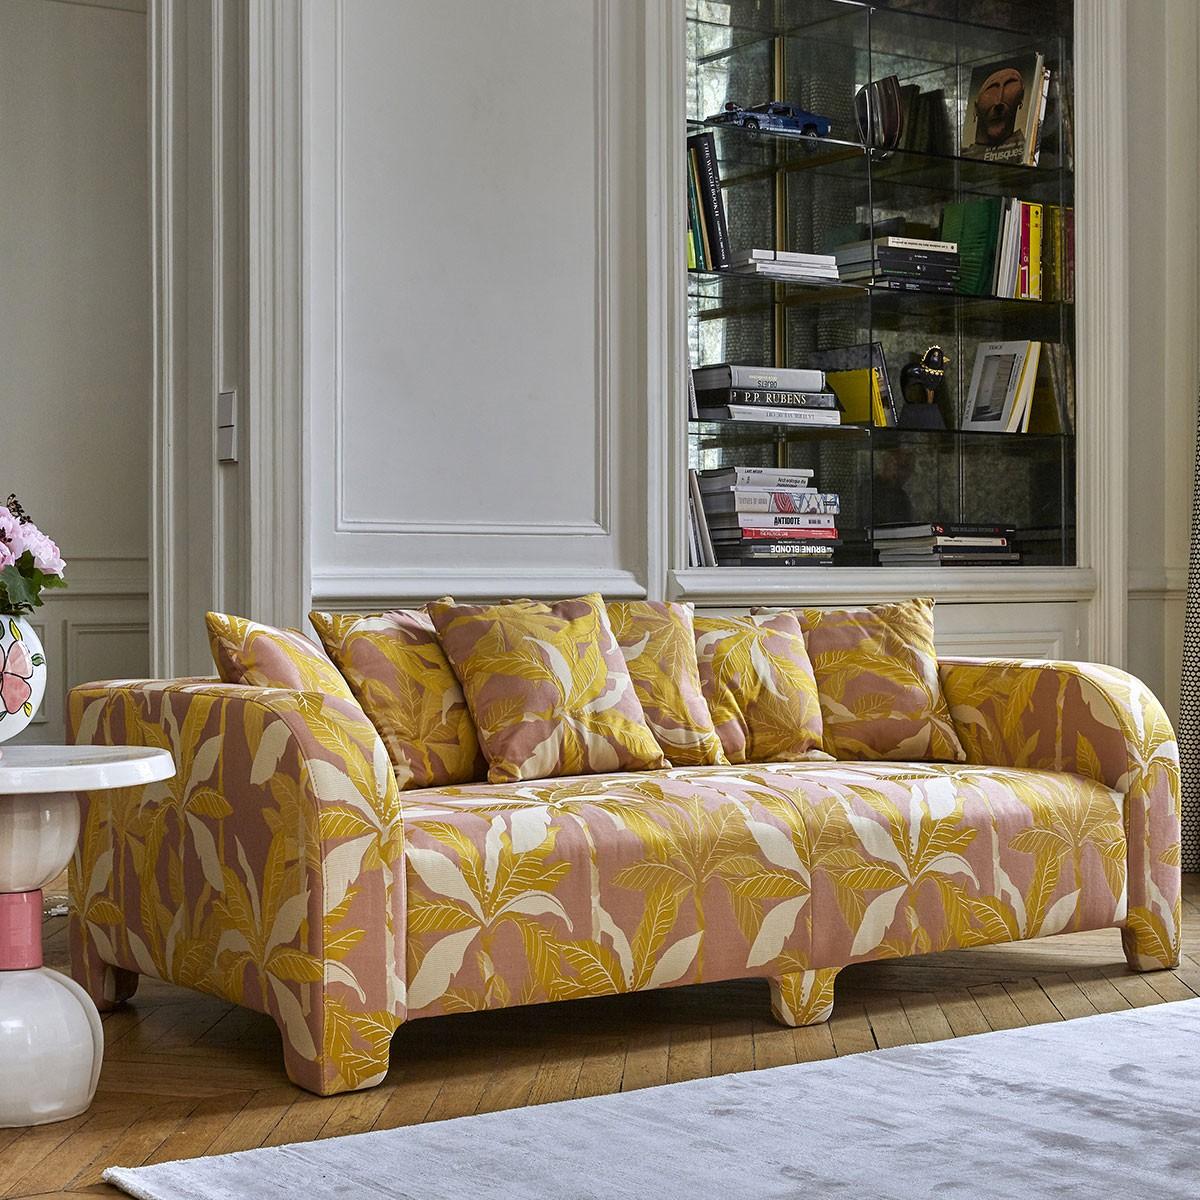 Popus Editions Graziella 3 Seater Sofa in Fuschia London Linen Fabric In New Condition For Sale In Paris, FR